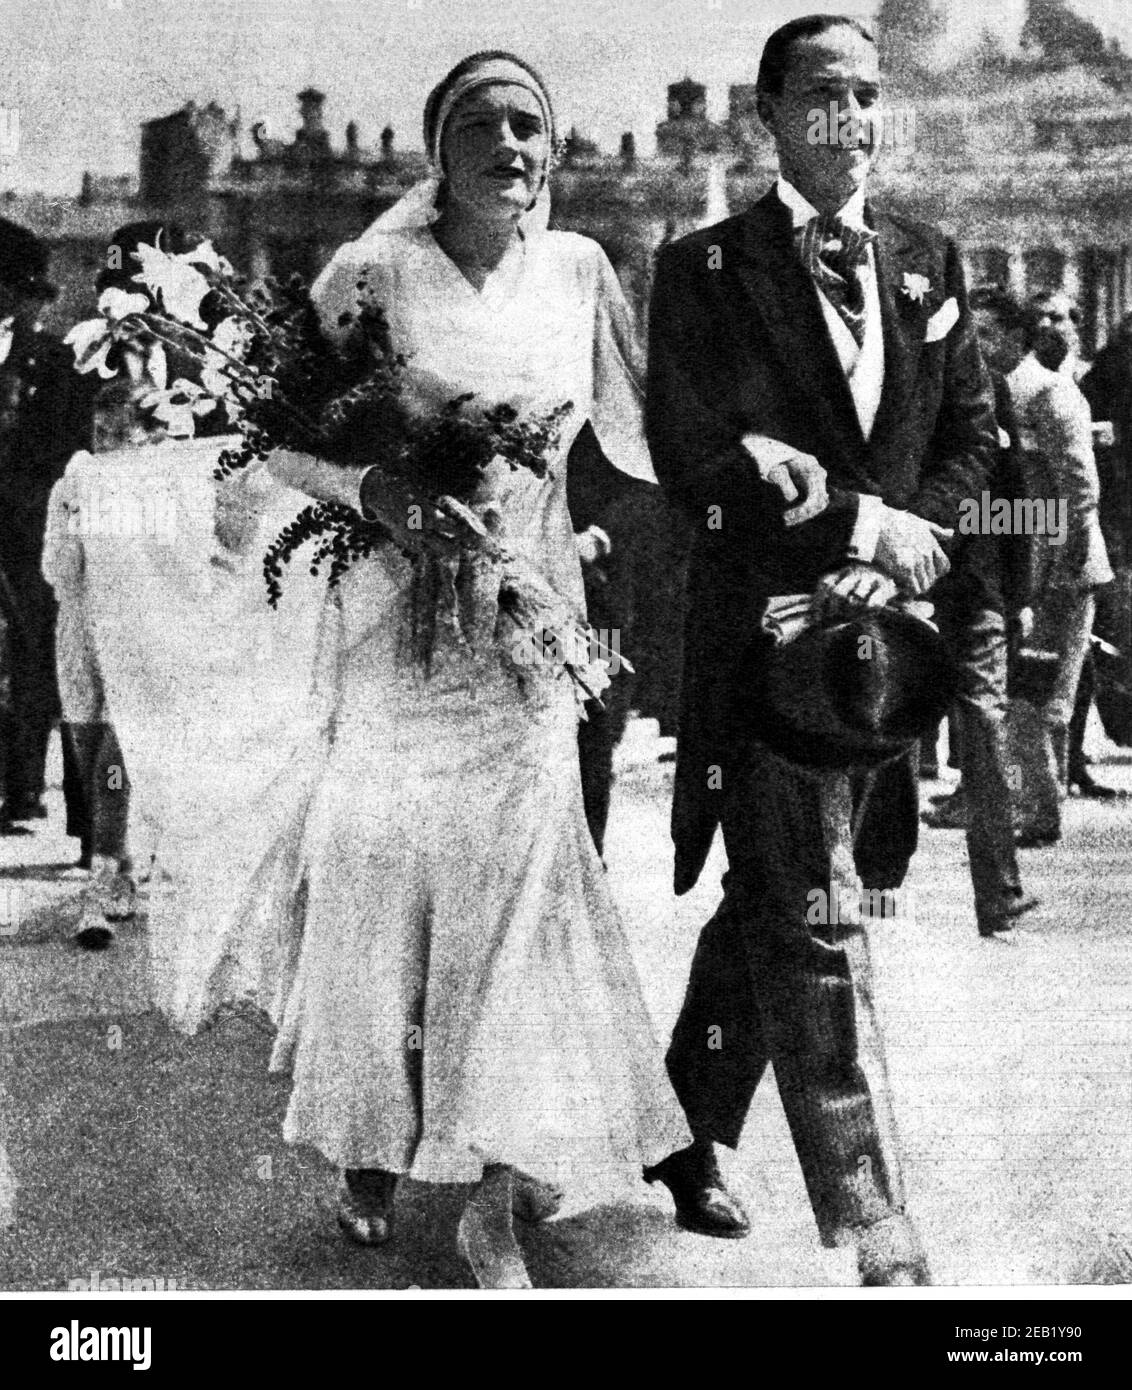 24 april 1930 , Rome , ITALY :  EDDA MUSSOLINI and  GALEAZZO CIANO  just married in the Saint Peter church - WWII - FASCISMO - FASCISTA - SECONDA GUERRA MONDIALE - sposi - matrimonio - sposalizio - marriage - abito da sposa - marito e moglie - houseband and wife  - Basilica di San Pietro - Vaticano  ----  Archivio GBB Stock Photo